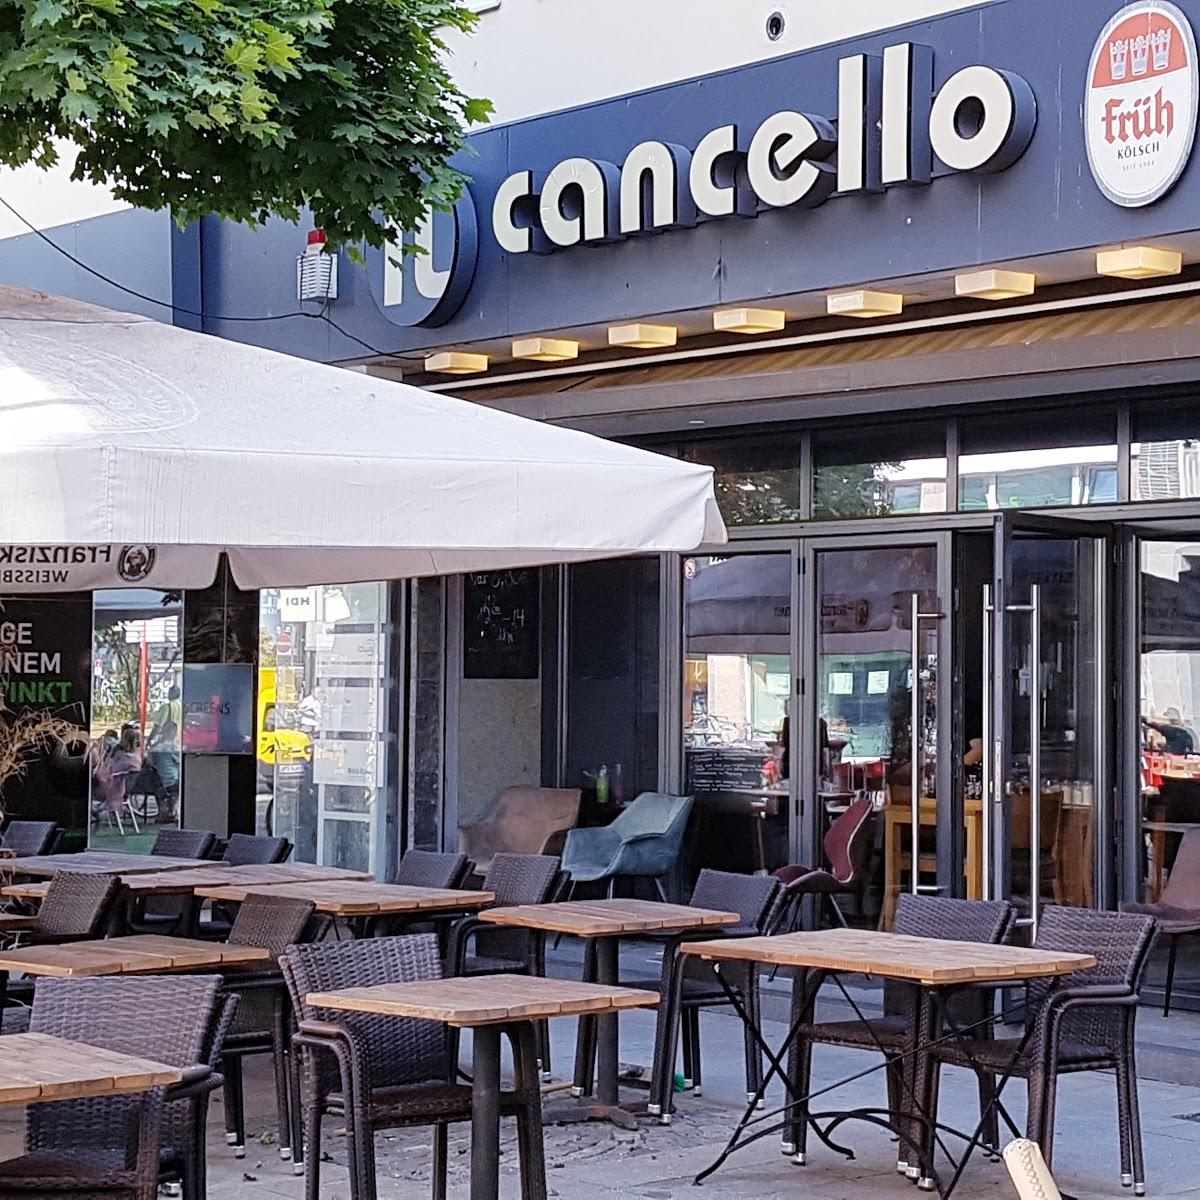 Restaurant "Il Cancello" in Köln